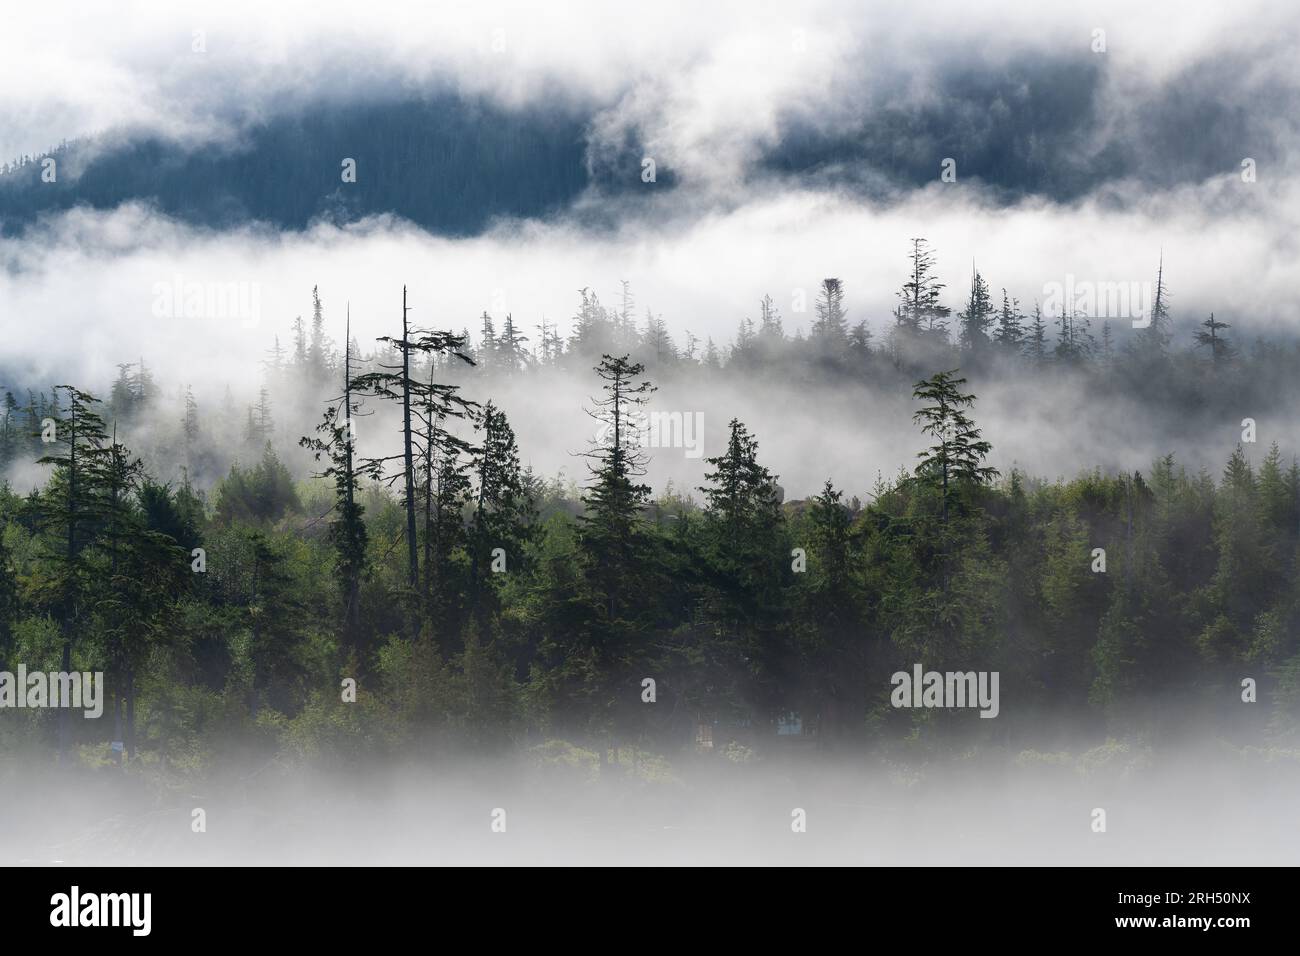 Foresta pluviale temperata in nebbia e nebbia, Telegraph Cove, Vancouver Island, British Columbia, Canada. Foto Stock